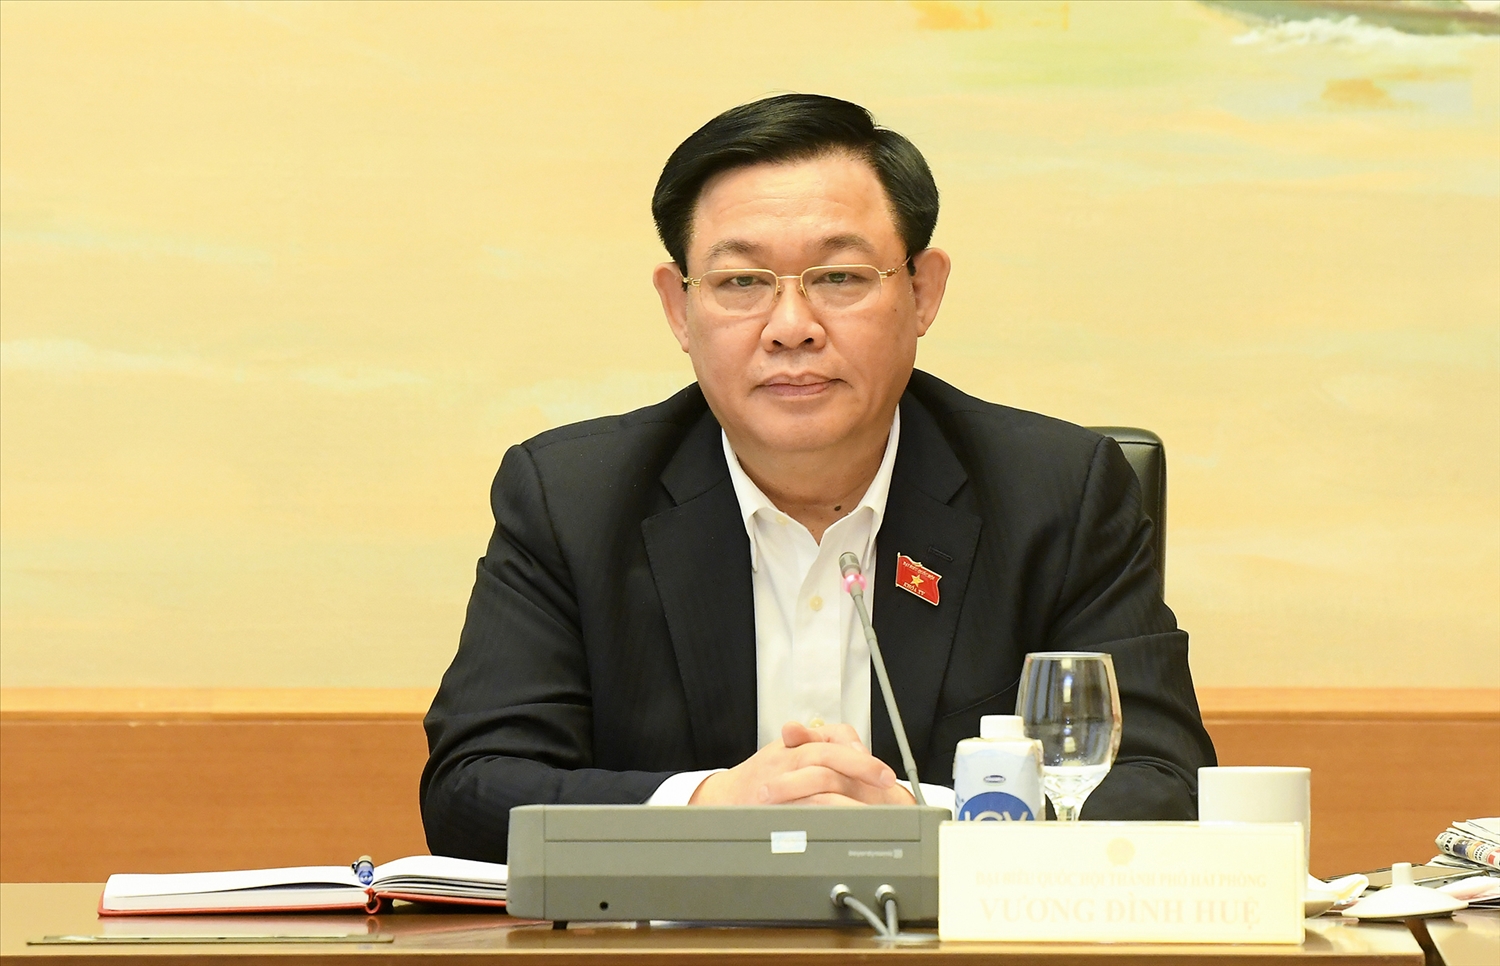 Dự án đường Hồ Chí Minh: Bộ trưởng Nguyễn Văn Thể nói không cân đối được vốn, ĐBQH cho rằng &quot;bao biện&quot; - Ảnh 3.